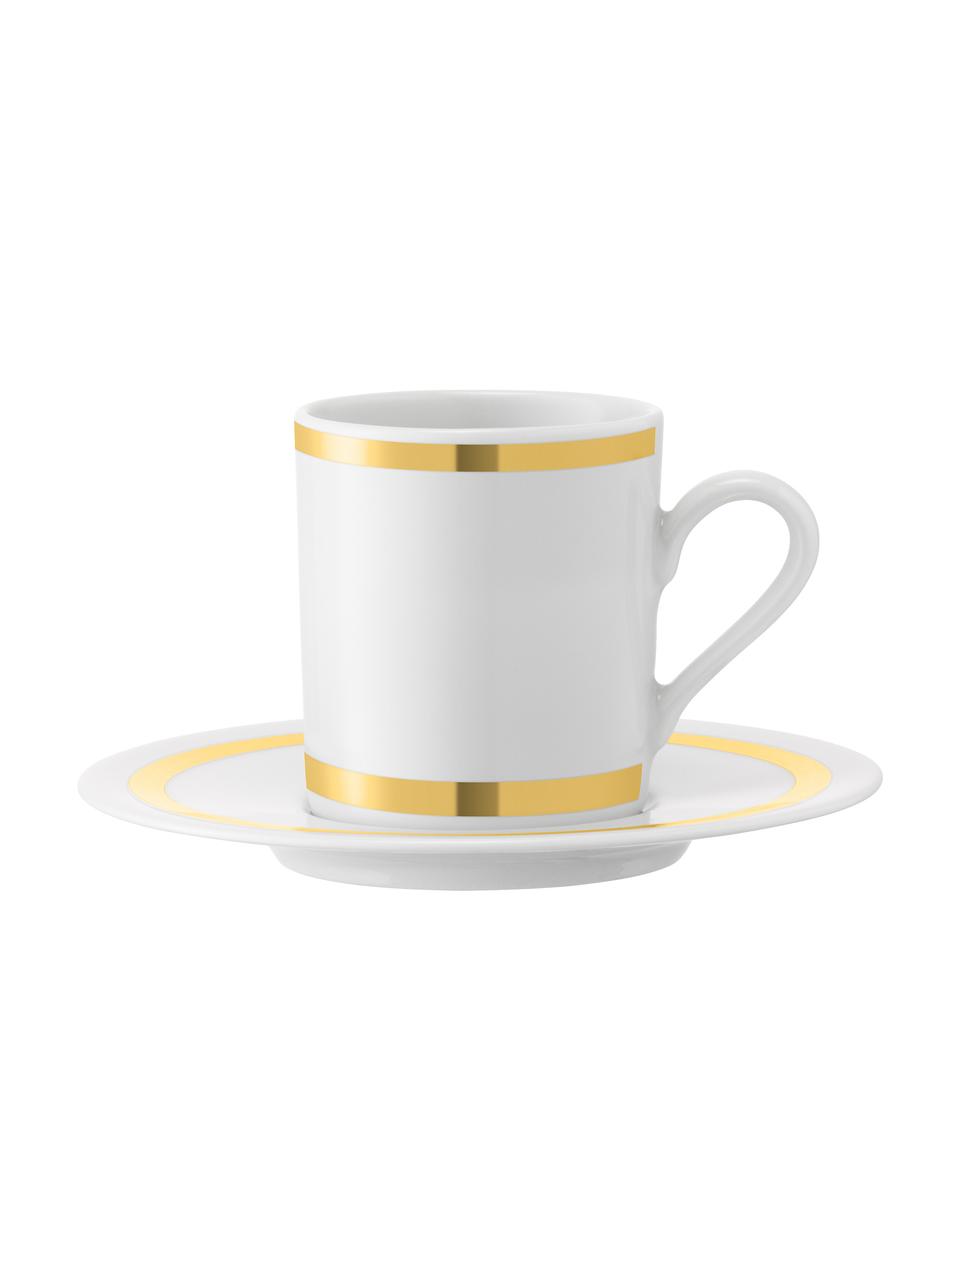 Espressokopjes met schoteltjes Deco met goudkleurig decoratie, 8 stuks, Porselein, Wit, goudkleurig, Ø 7 x H 7 cm